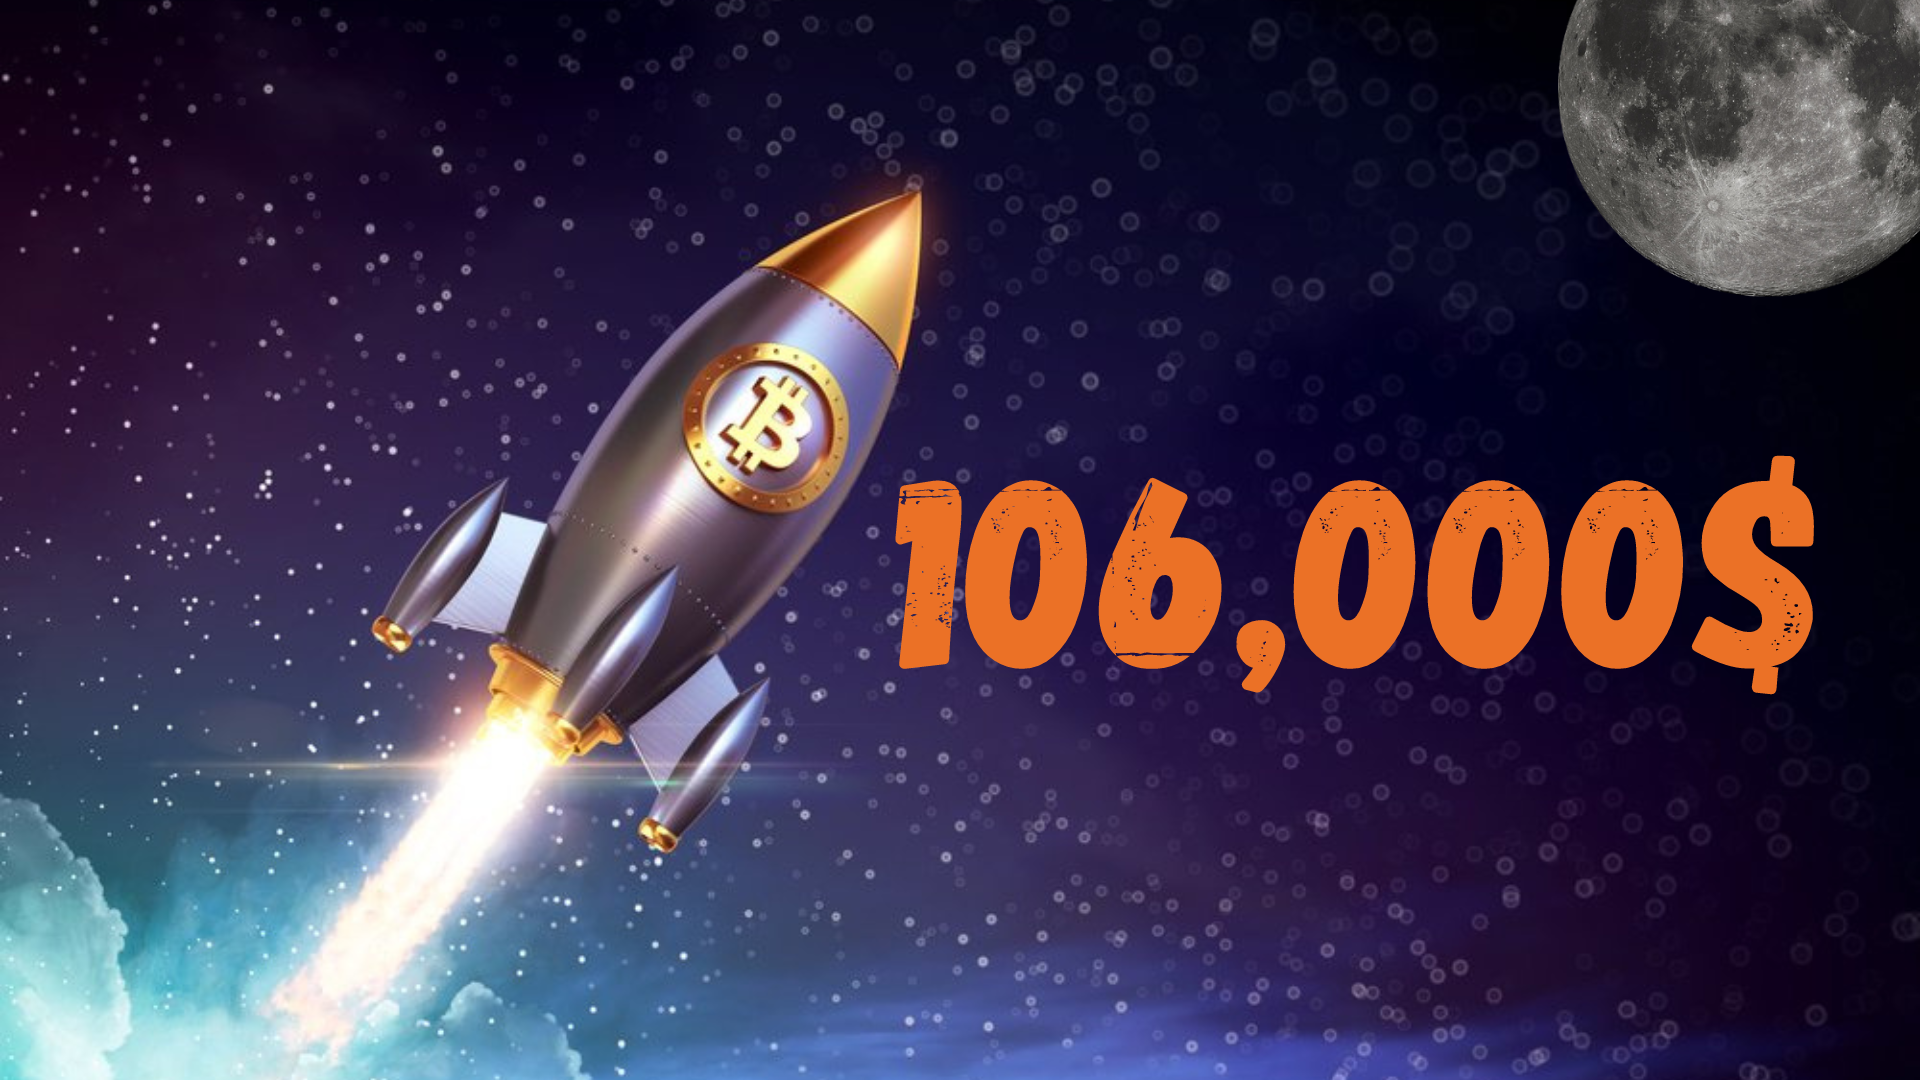  Ekspertai mano, kad Bitcoin yra pasirengęs kilti į 106K USD